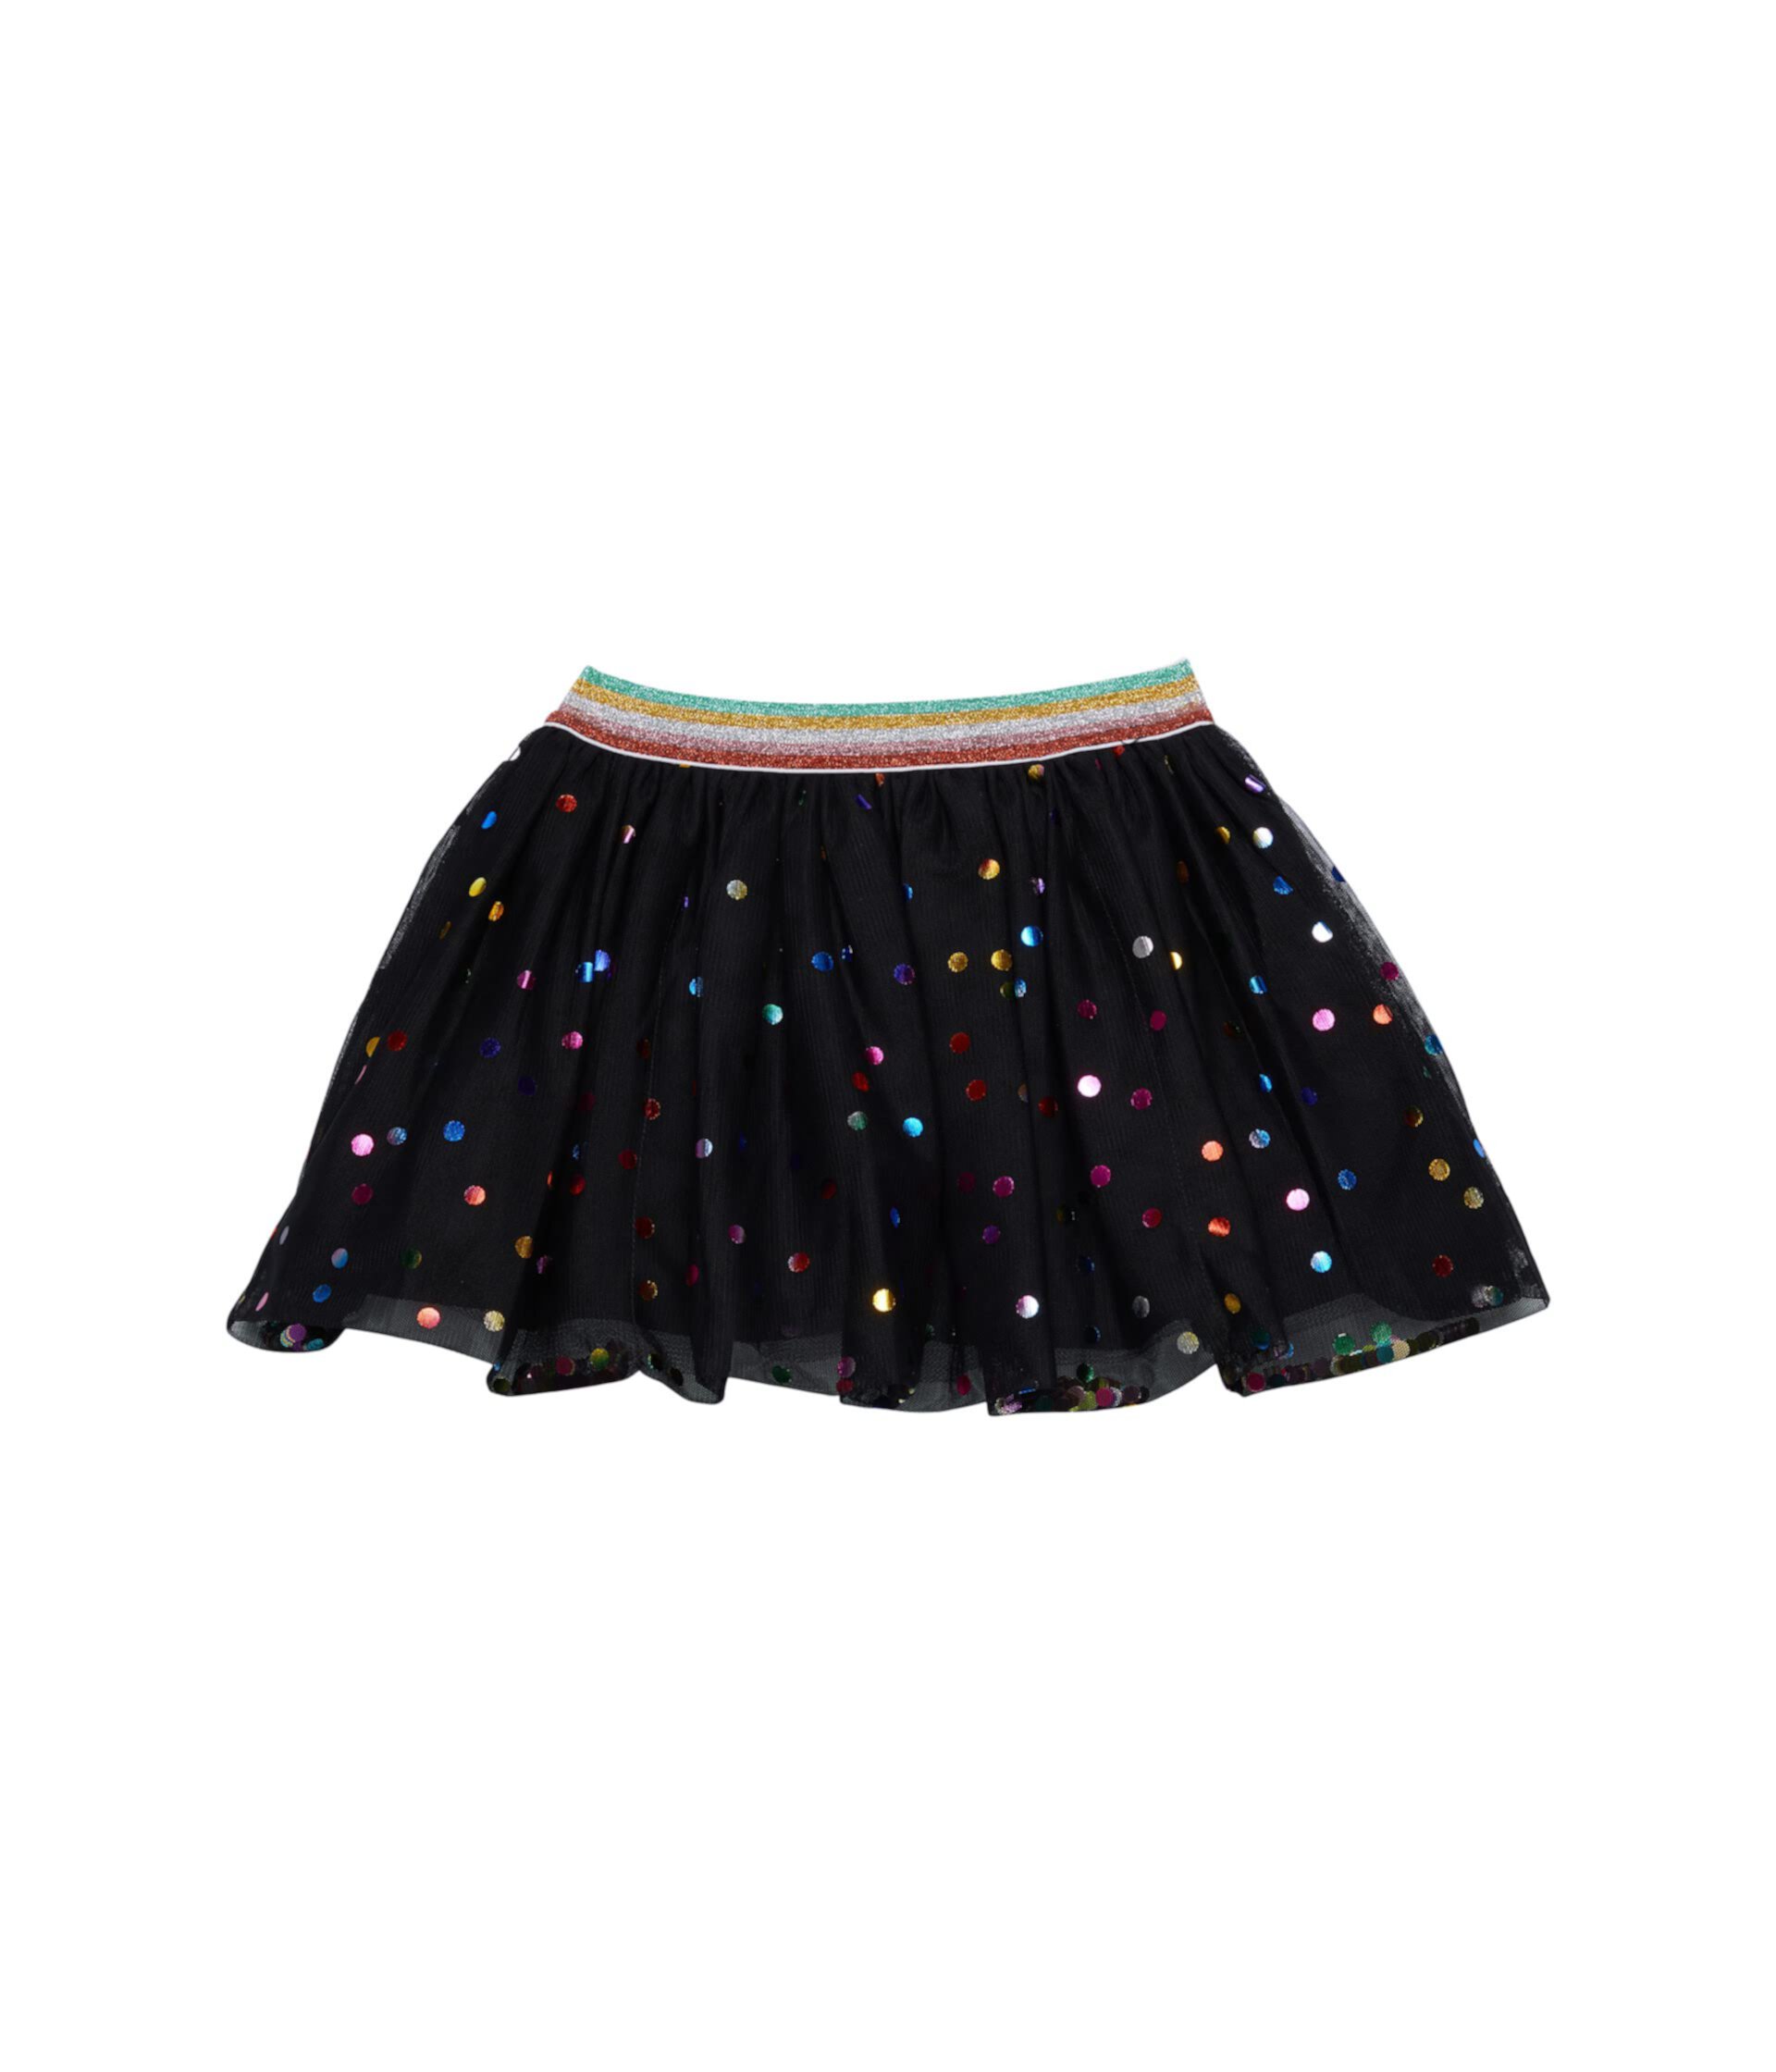 Юбка из тюля с разноцветными точками (для малышей/маленьких детей/больших детей) Stella McCartney Kids